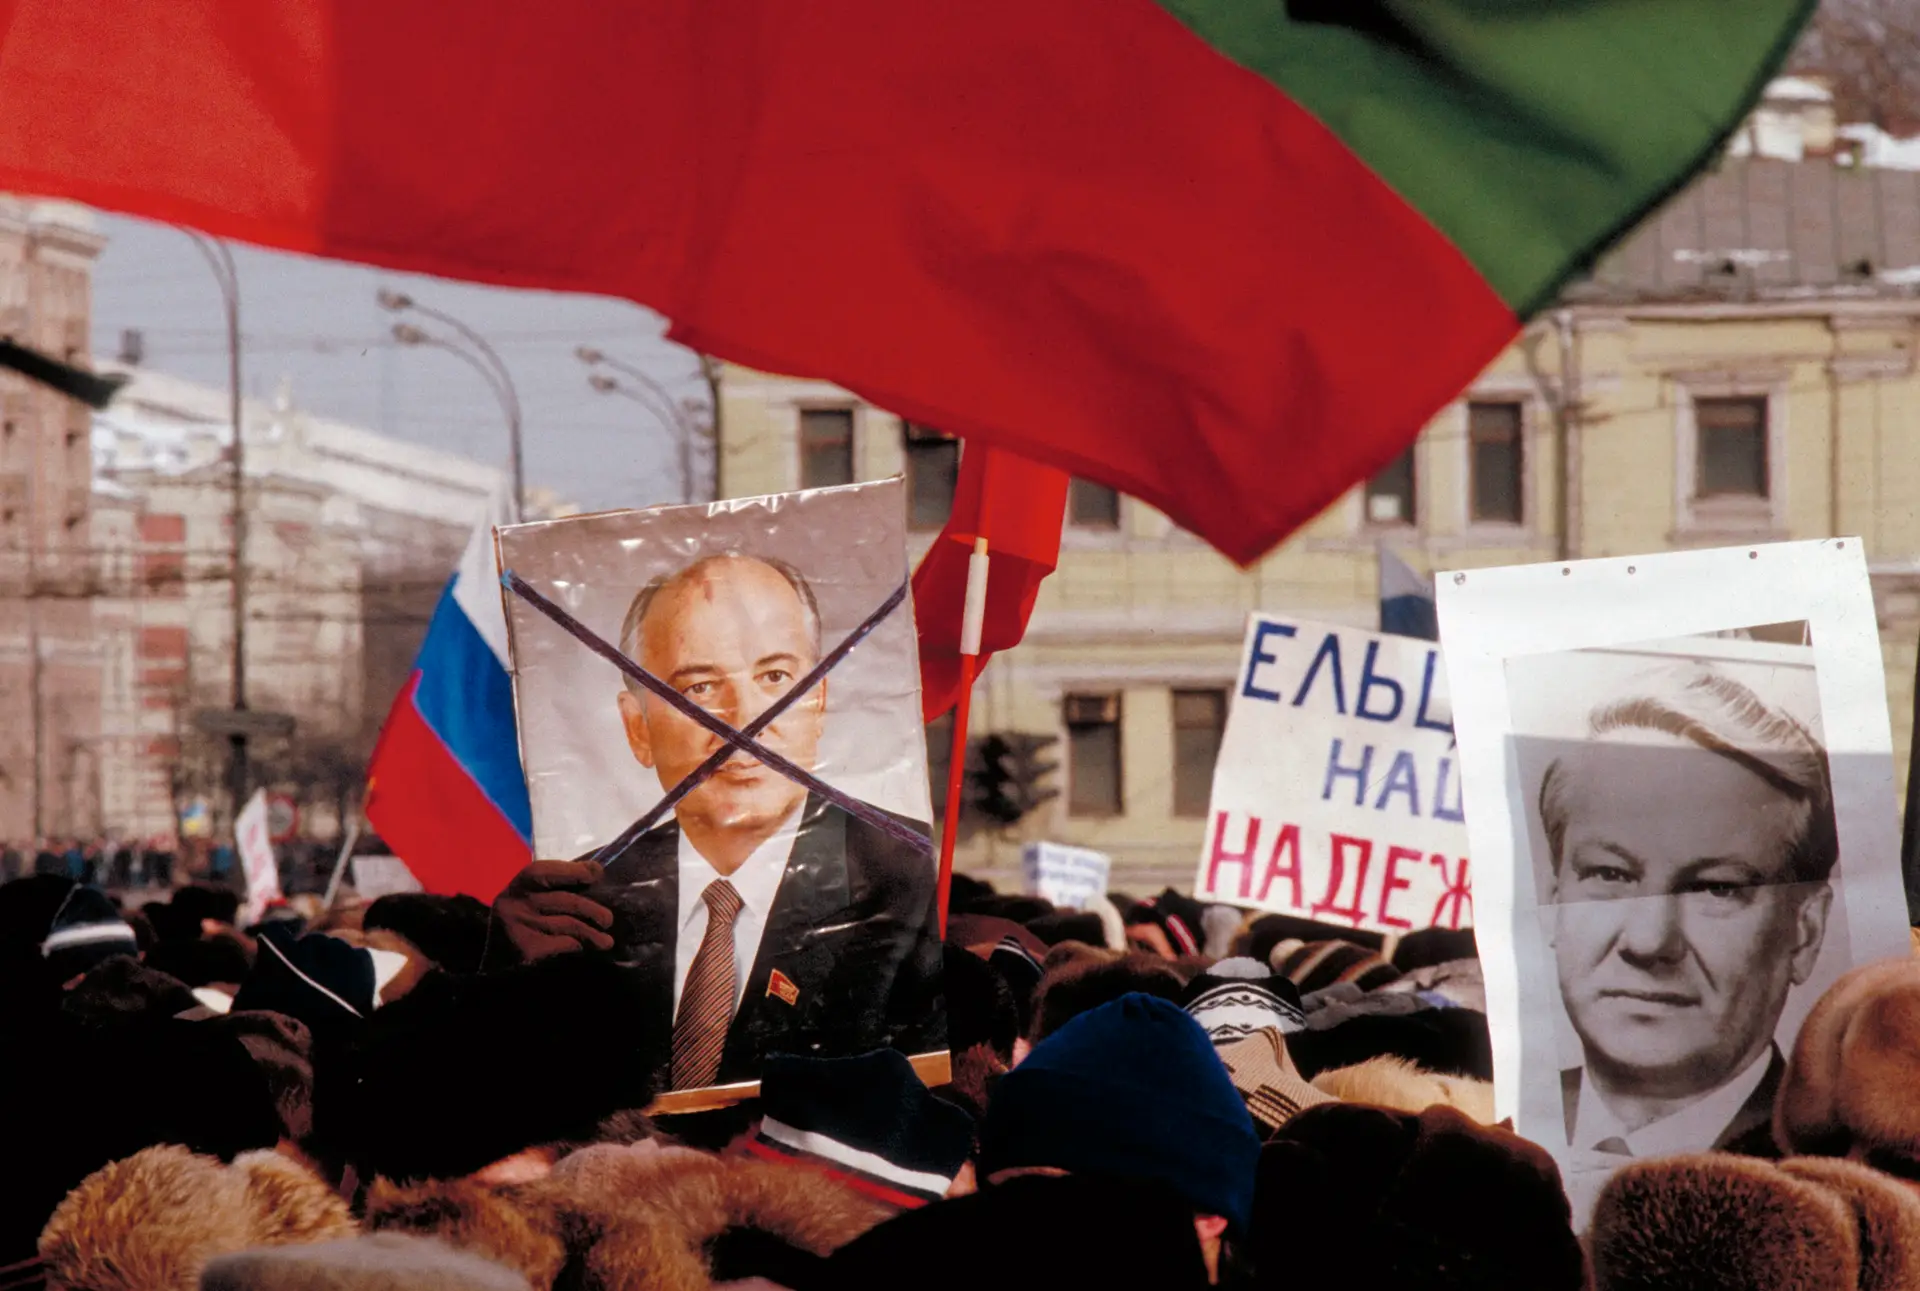 URSS. Gorbachev foi o último líder da União Soviética. Boris Ieltsin (no retrato da direita) foi o primeiro Presidente da Rússia. Entre os russos, o sentimento em relação a um e outro é contrastante